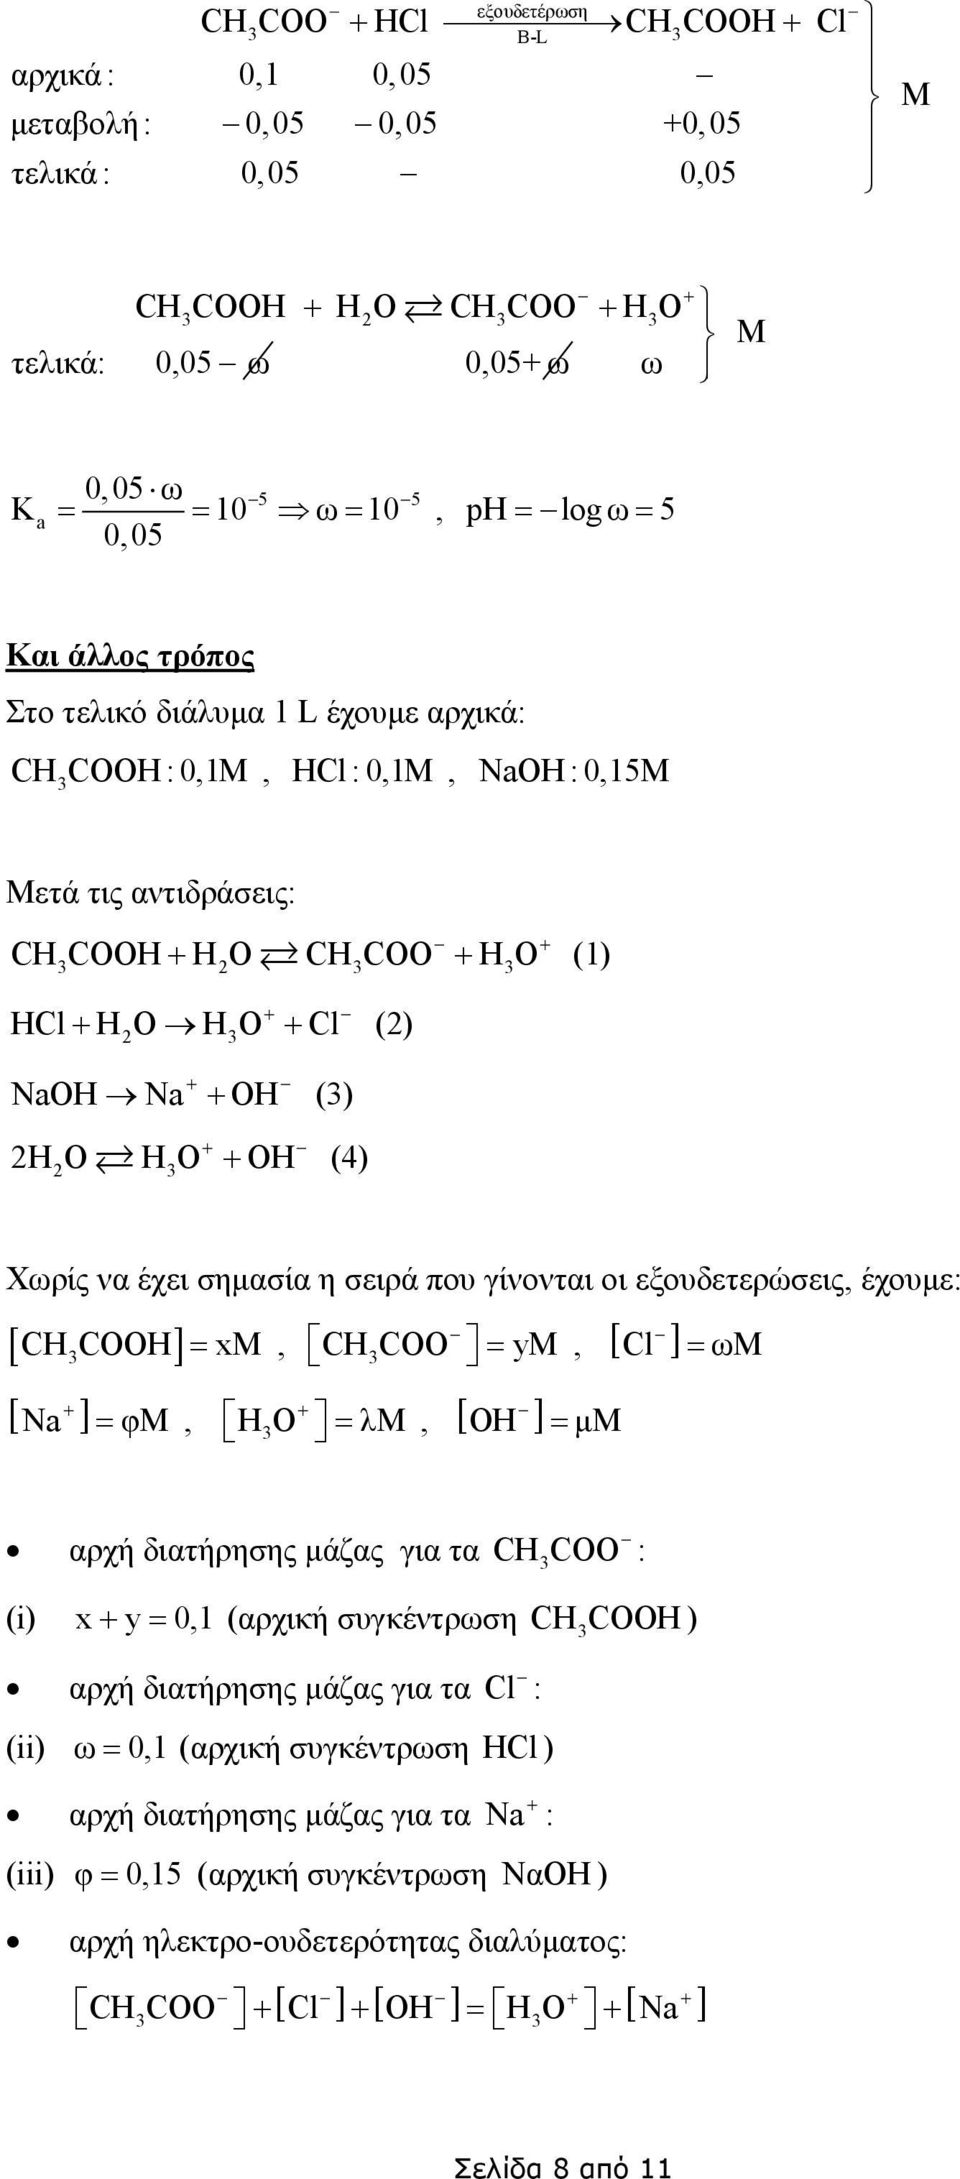 Χωρίς να έχει σηµασία η σειρά που γίνονται οι εξουδετερώσεις έχουµε: [ CHCOOH] + [ ] N = x CHCOO = y + = φ HO = λ [ Cl ] OH = µ [ ] = ω αρχή διατήρησης µάζας για τα CHCOO : (i) x + y = 01 (αρχική